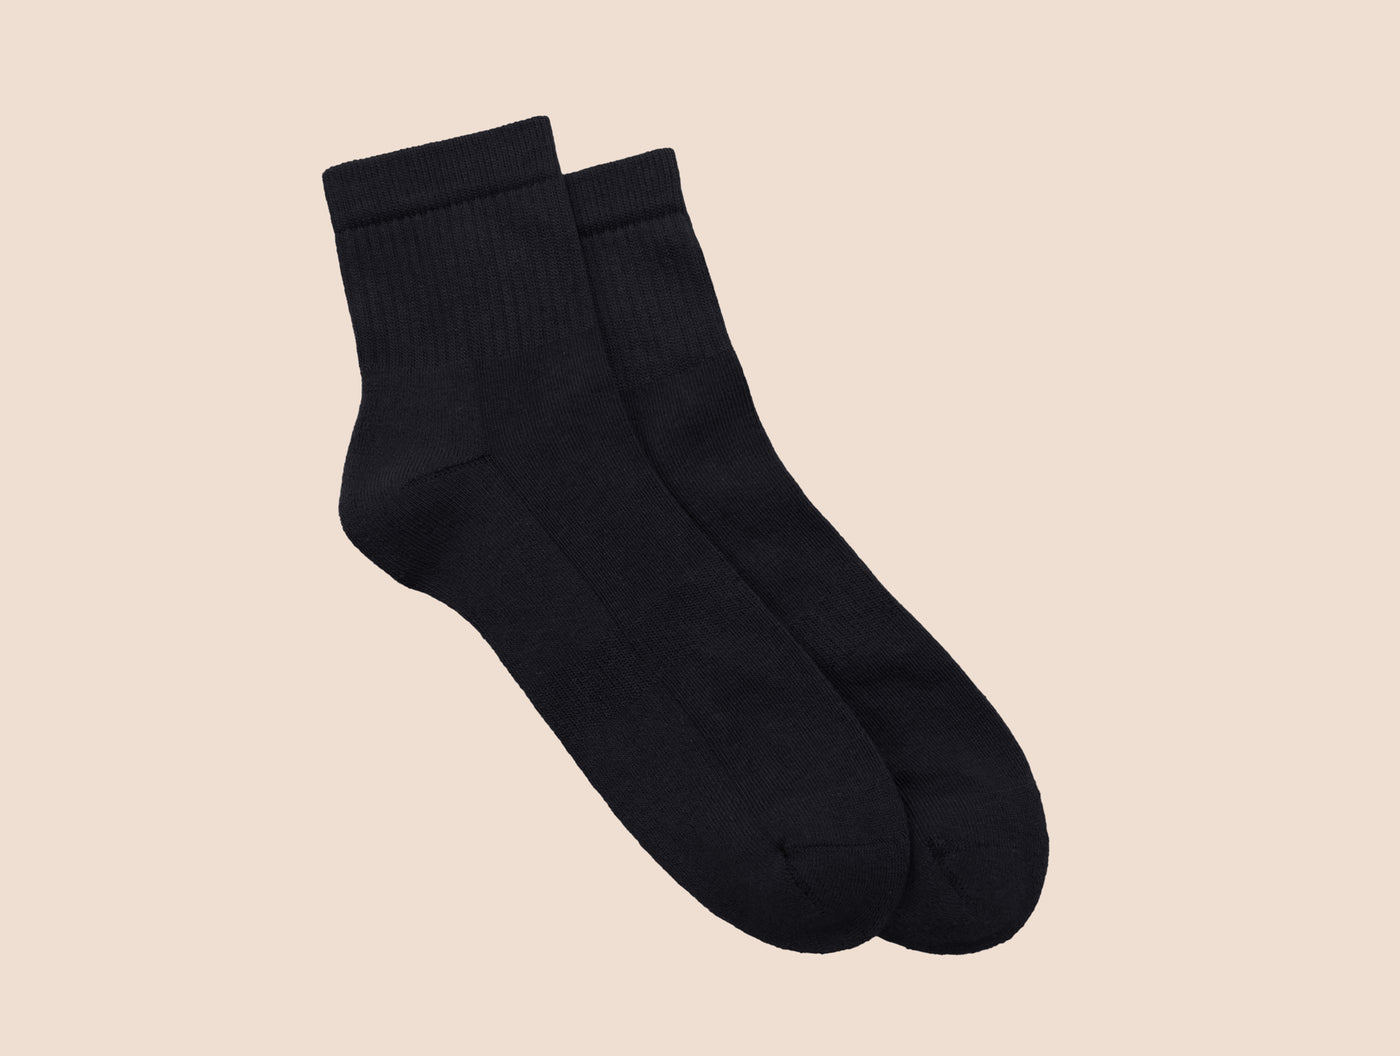 Petrone-chaussettes-tennis-coton-bio-unies-basses-homme-noir-posees#couleur_noir